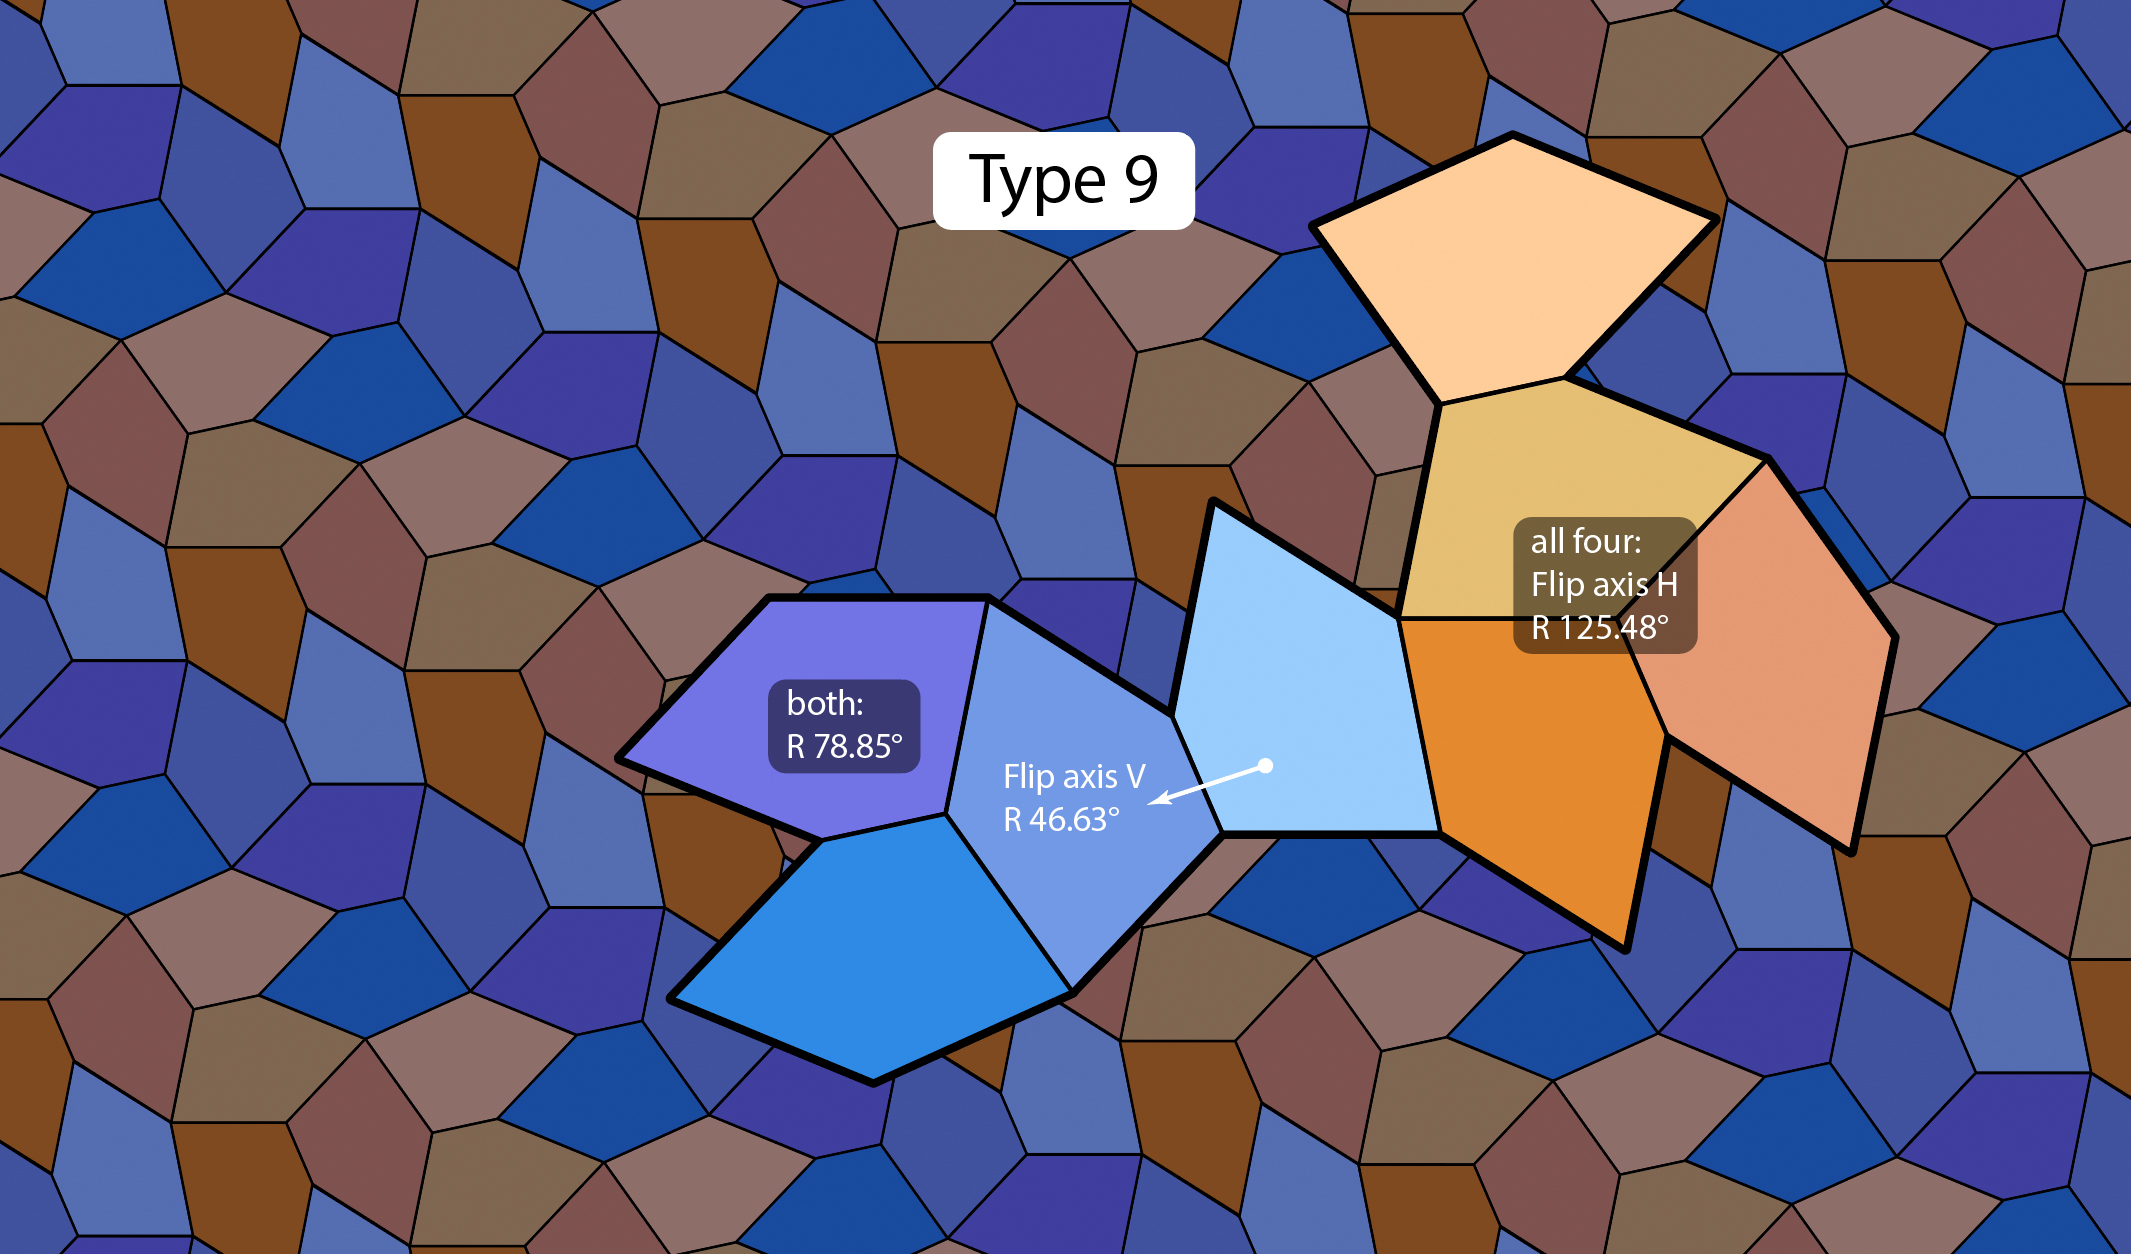 Type 9 pentagon pattern